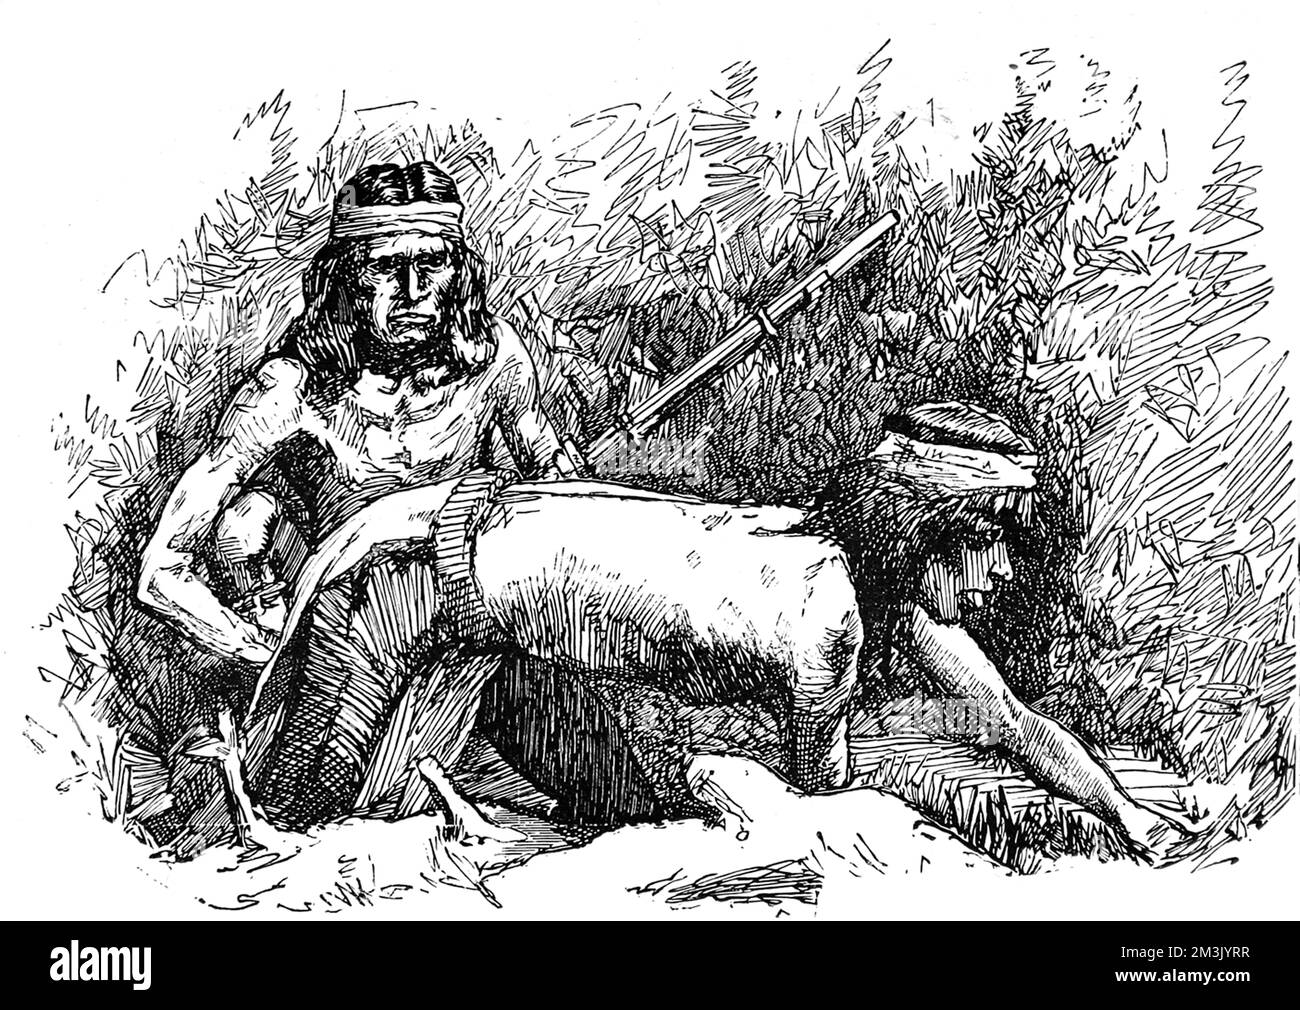 Zwei Apachen-Krieger in Hosen und Kopfplättchen bereiten sich auf einen Angriff auf eine weiße amerikanische Ranch vor. Dieses Bild wurde während des letzten Krieges zwischen den Apachen und der US-Armee in Süd-Arizona und Nord-Sonora, Old Mexico, c.1887, gemacht. Datum: 1887 Stockfoto